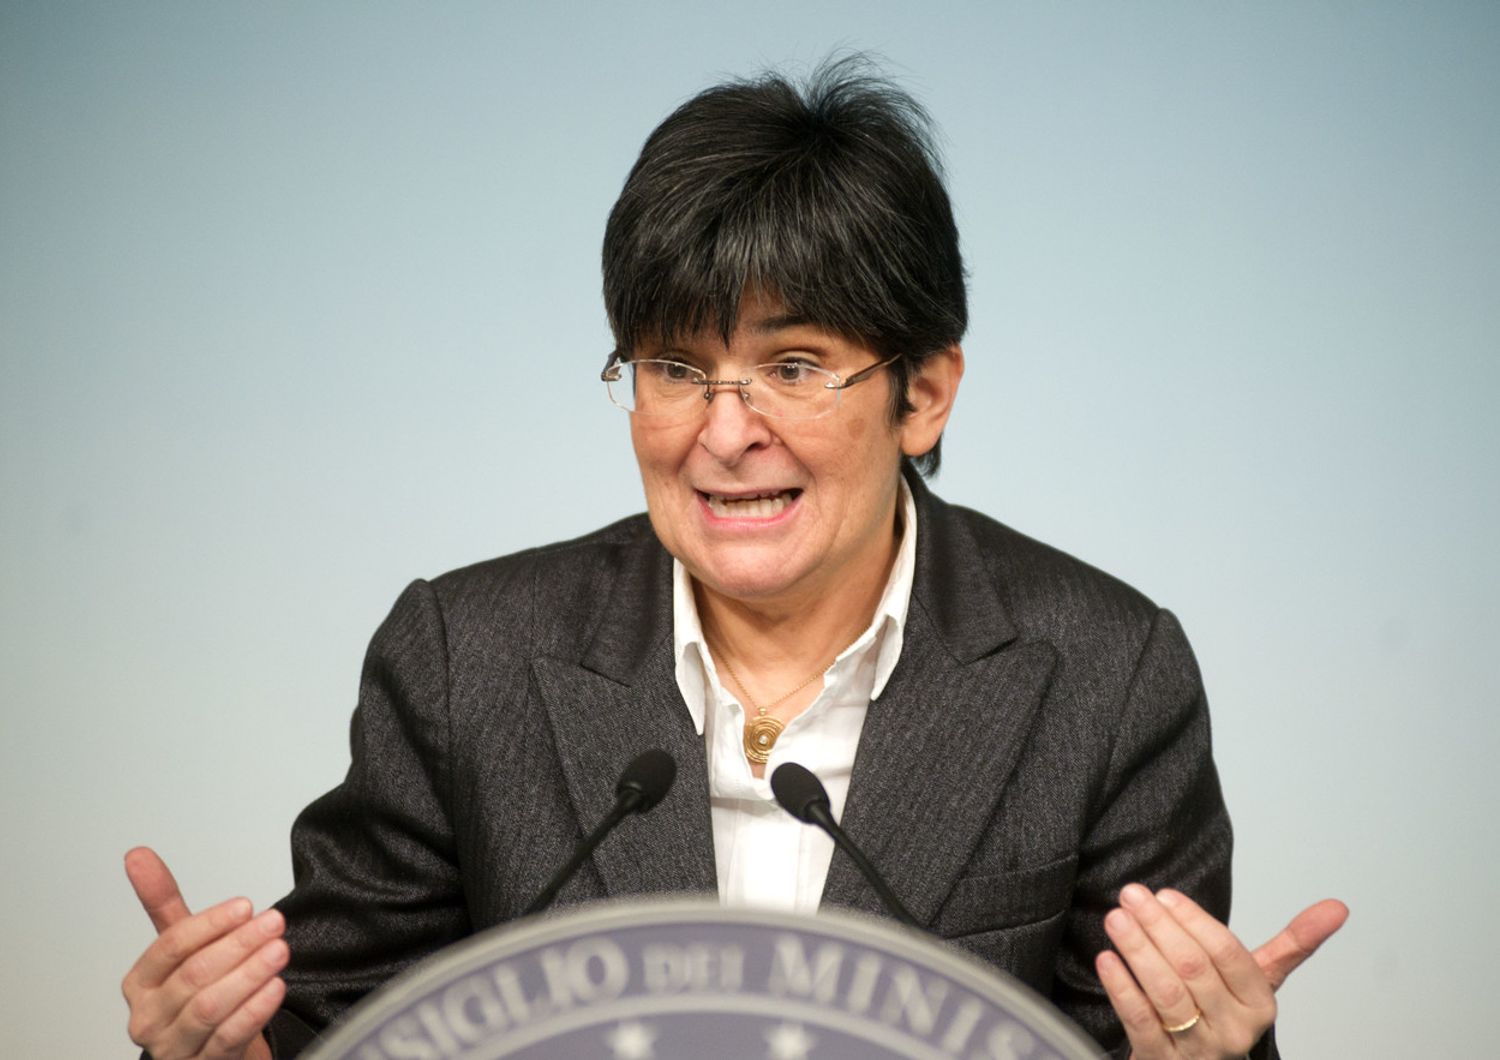 Cecilia Guerra